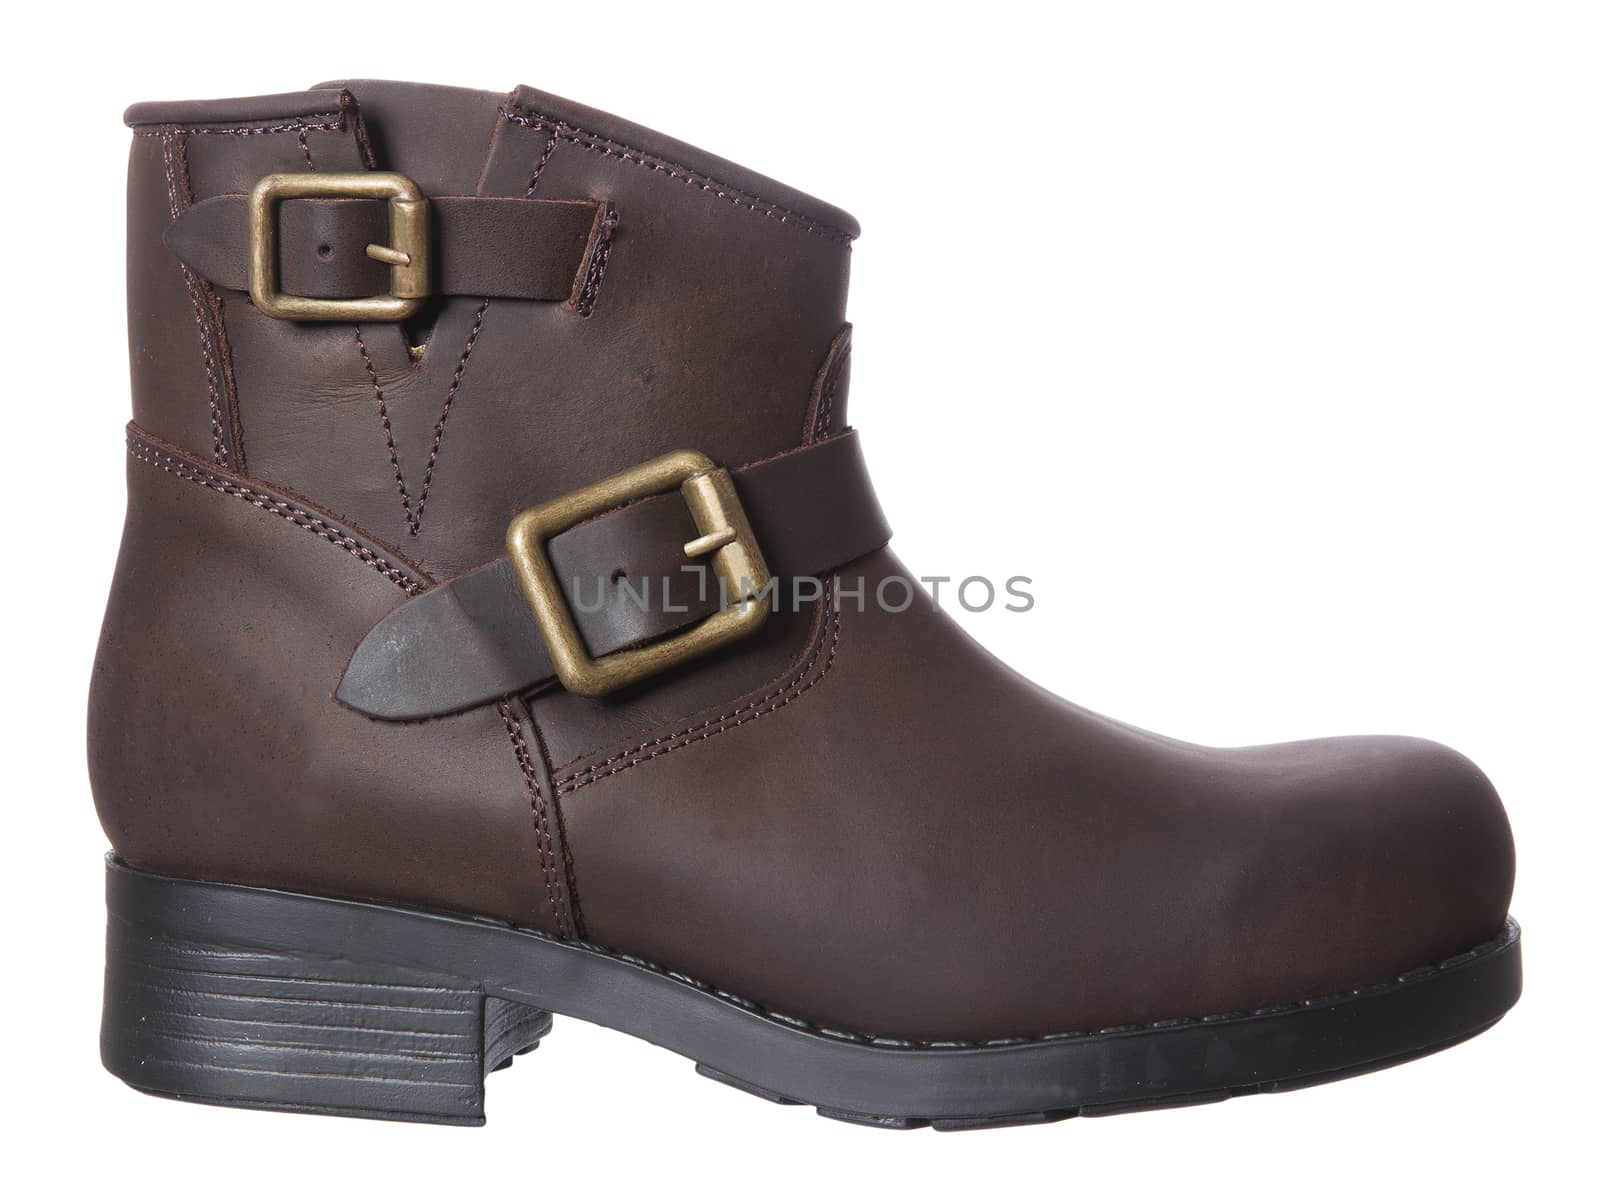 Brown boot by gemenacom